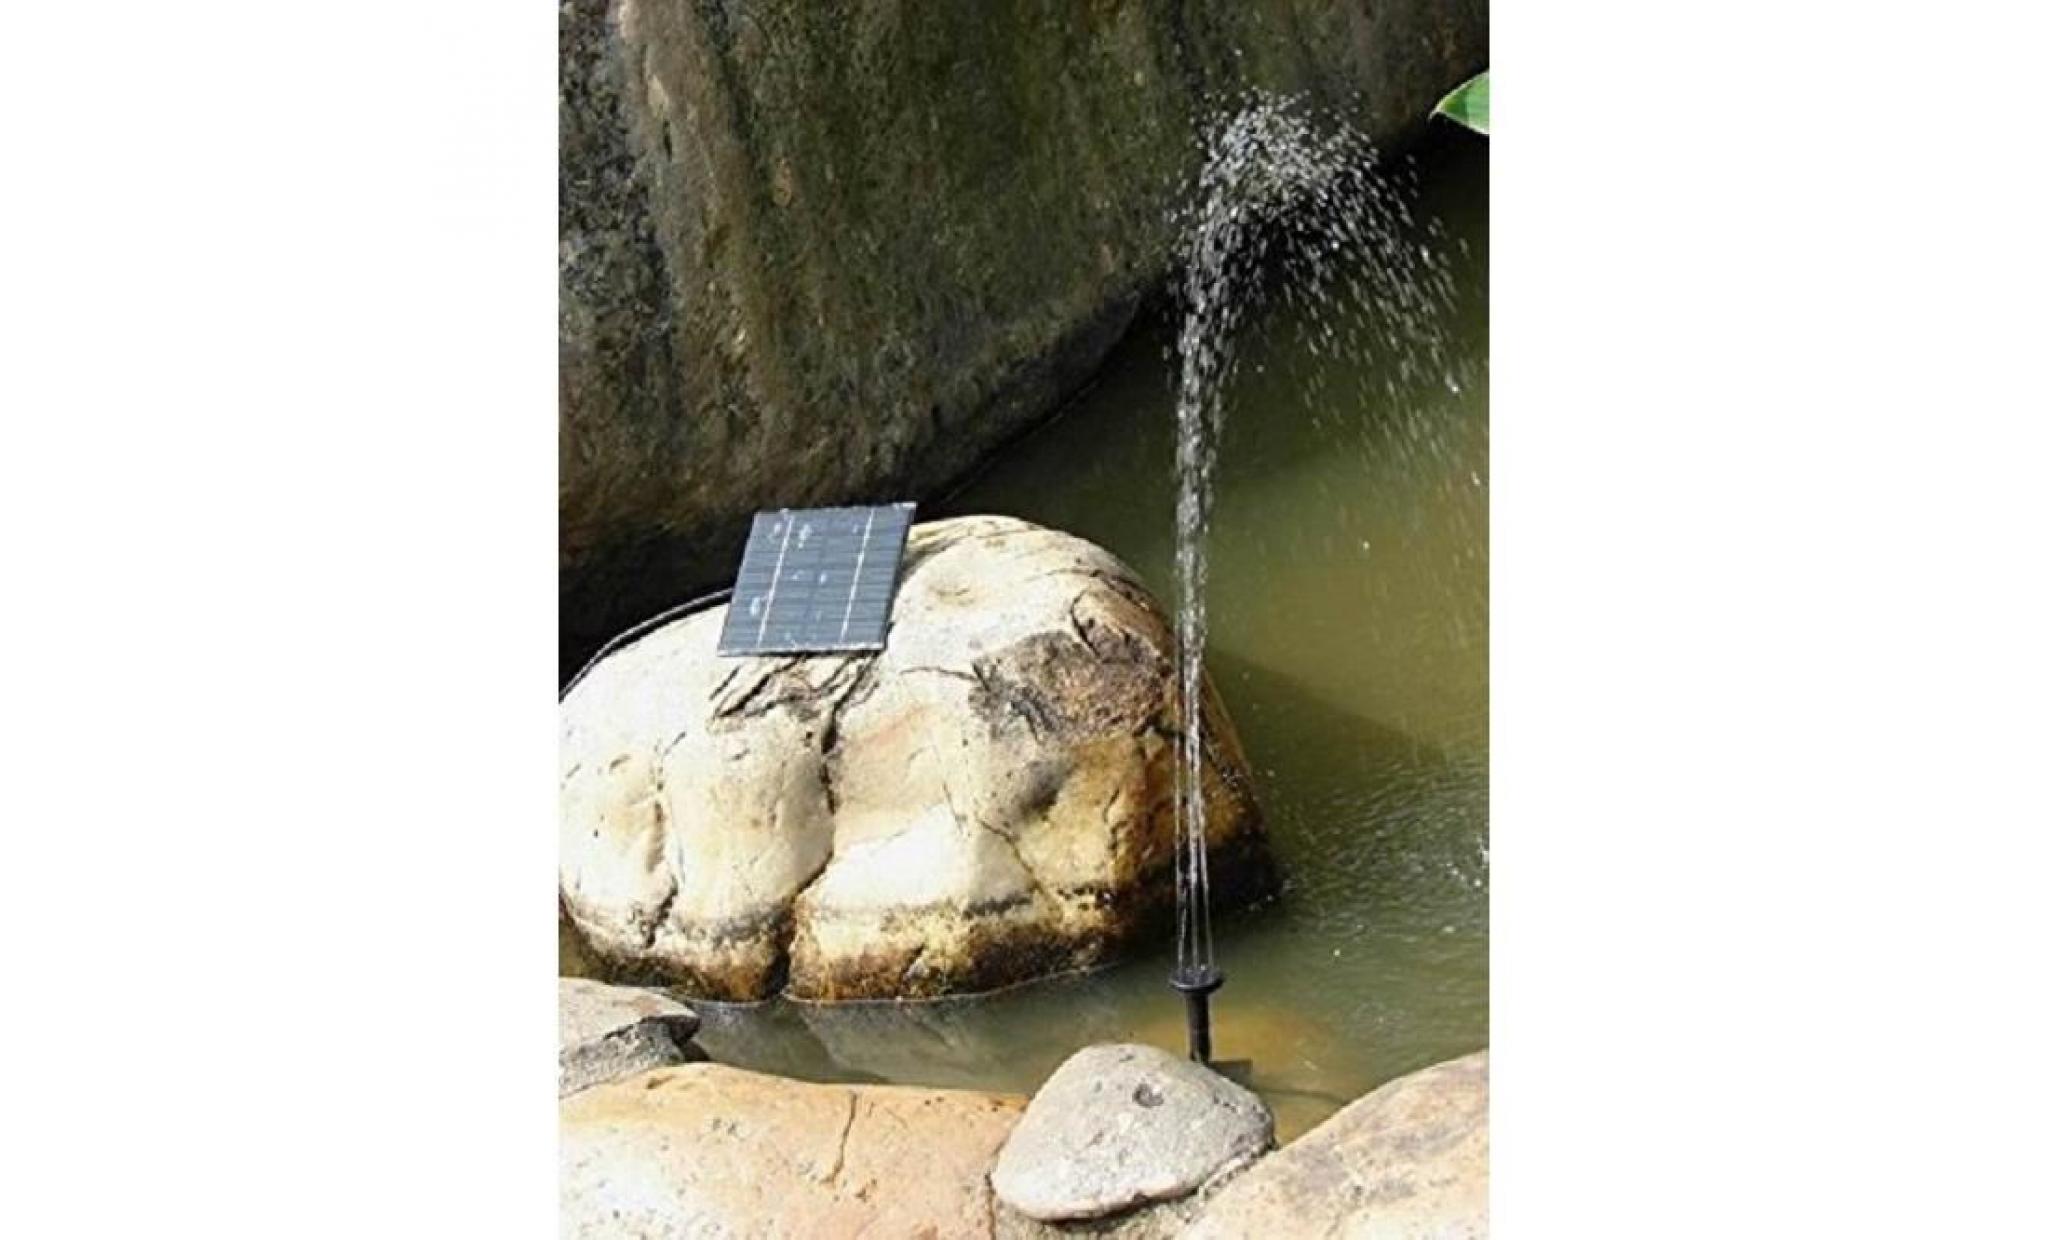 cittatrend 1,2w 7v pompe eau arrosage fontaine panneau solaire 180l/h max. pour bassin jardin pelouse Étang rocaille paysage 30 60cm pas cher